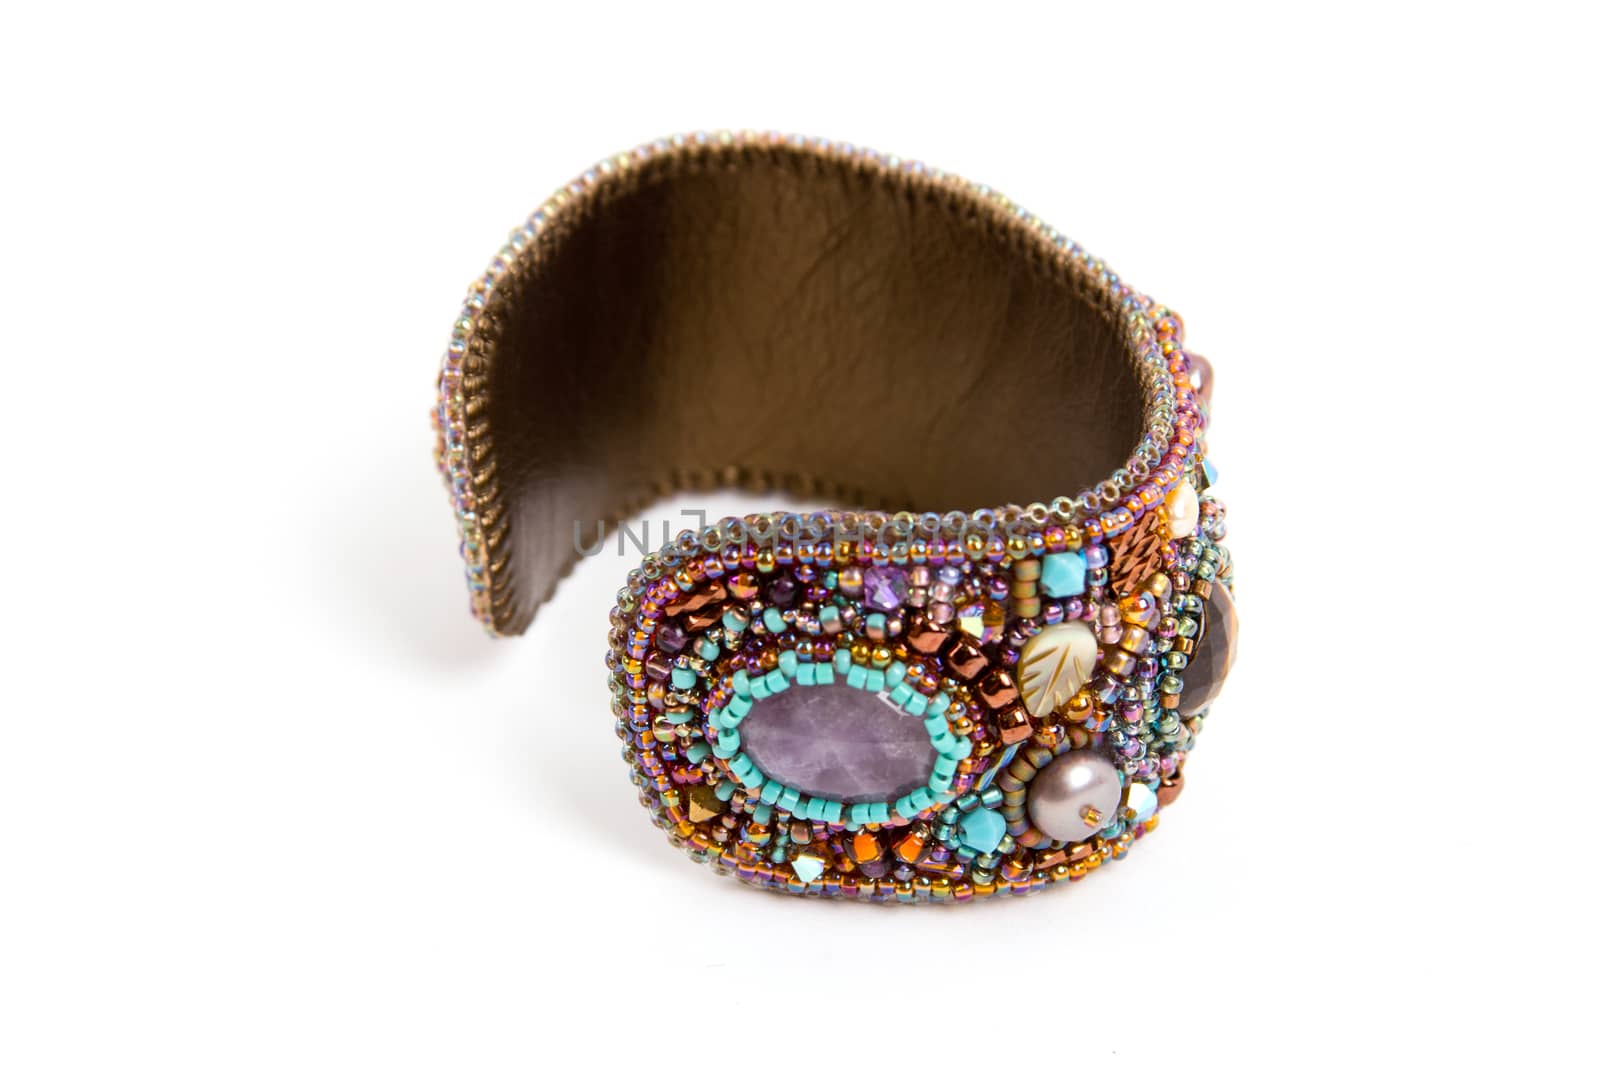 necklace earrings bracelet beads amethyst. luxury jewellery